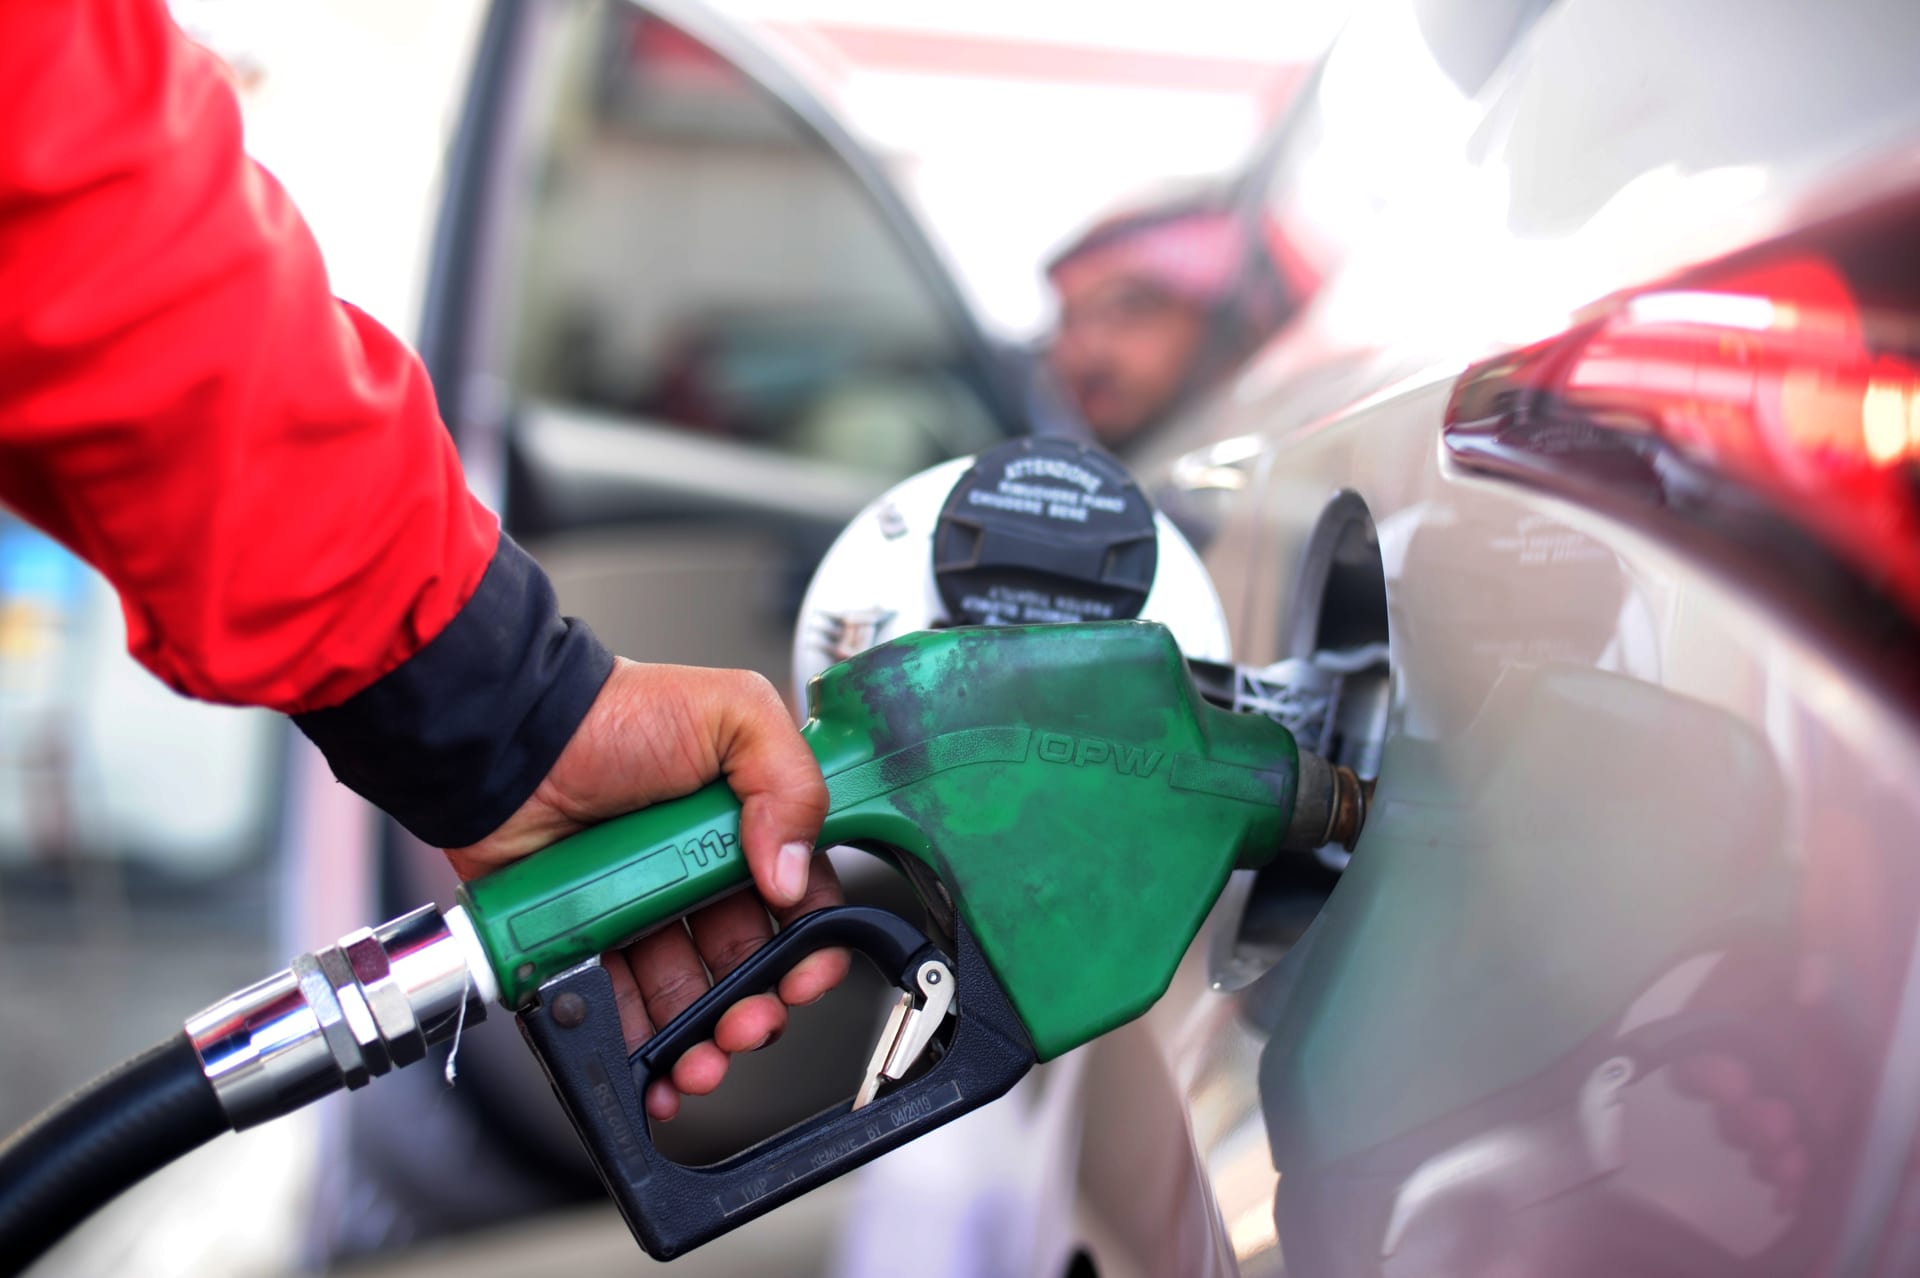 سعر البنزين في السعودية لشهر اغسطس 2022 وتوقعات الخبراء بخصوص أسعار المنتجات البترولية المختلفة